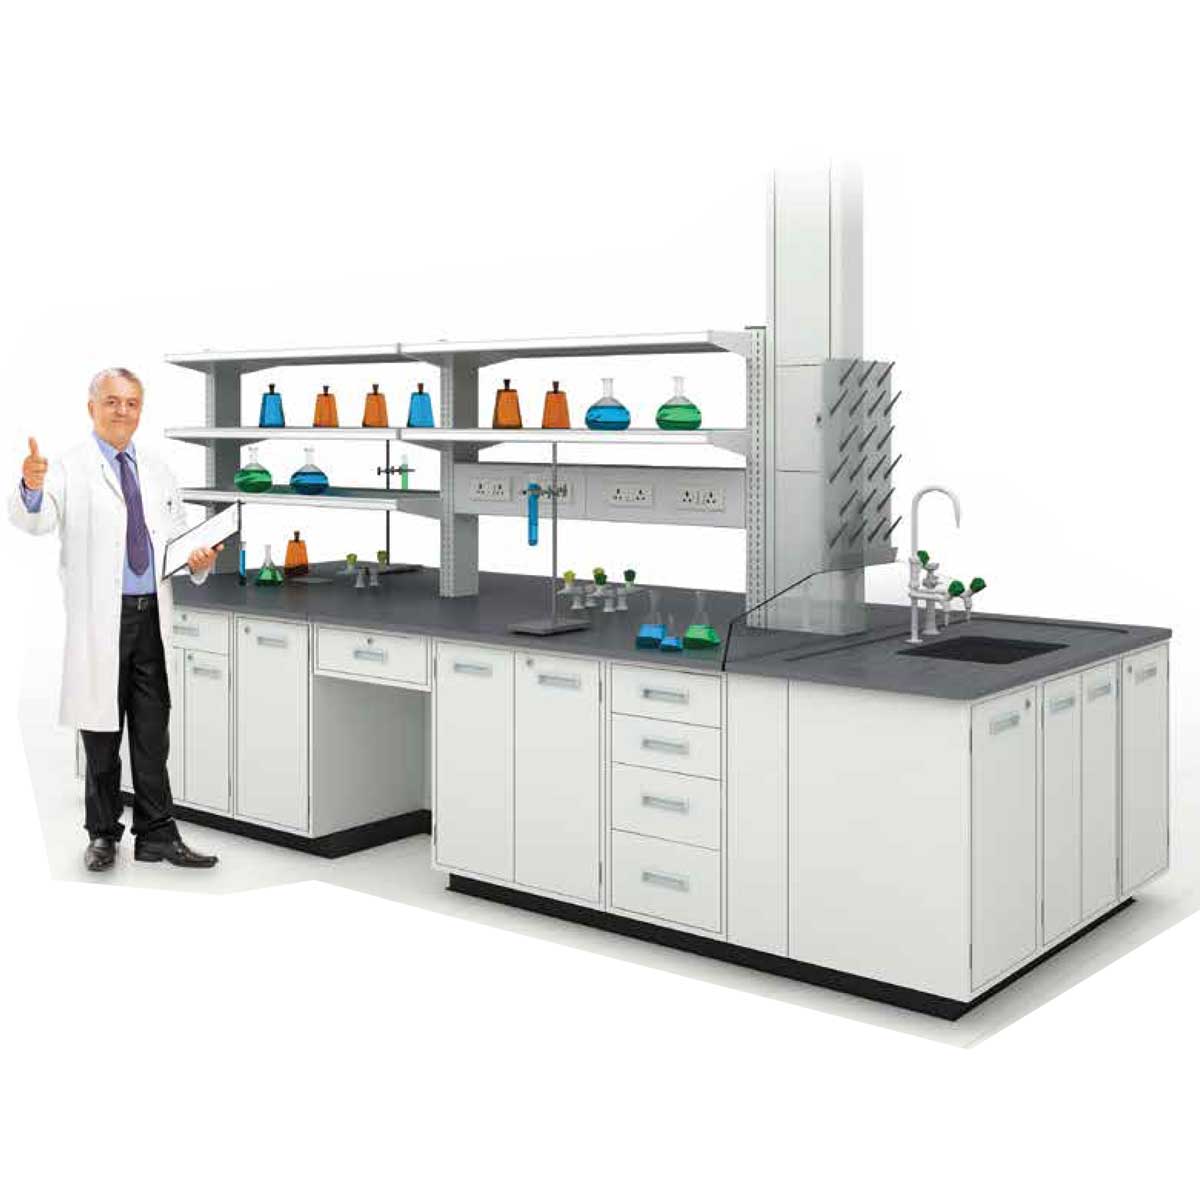 Laboratory Desks Manufacturers, Suppliers, Exporters in Delhi 